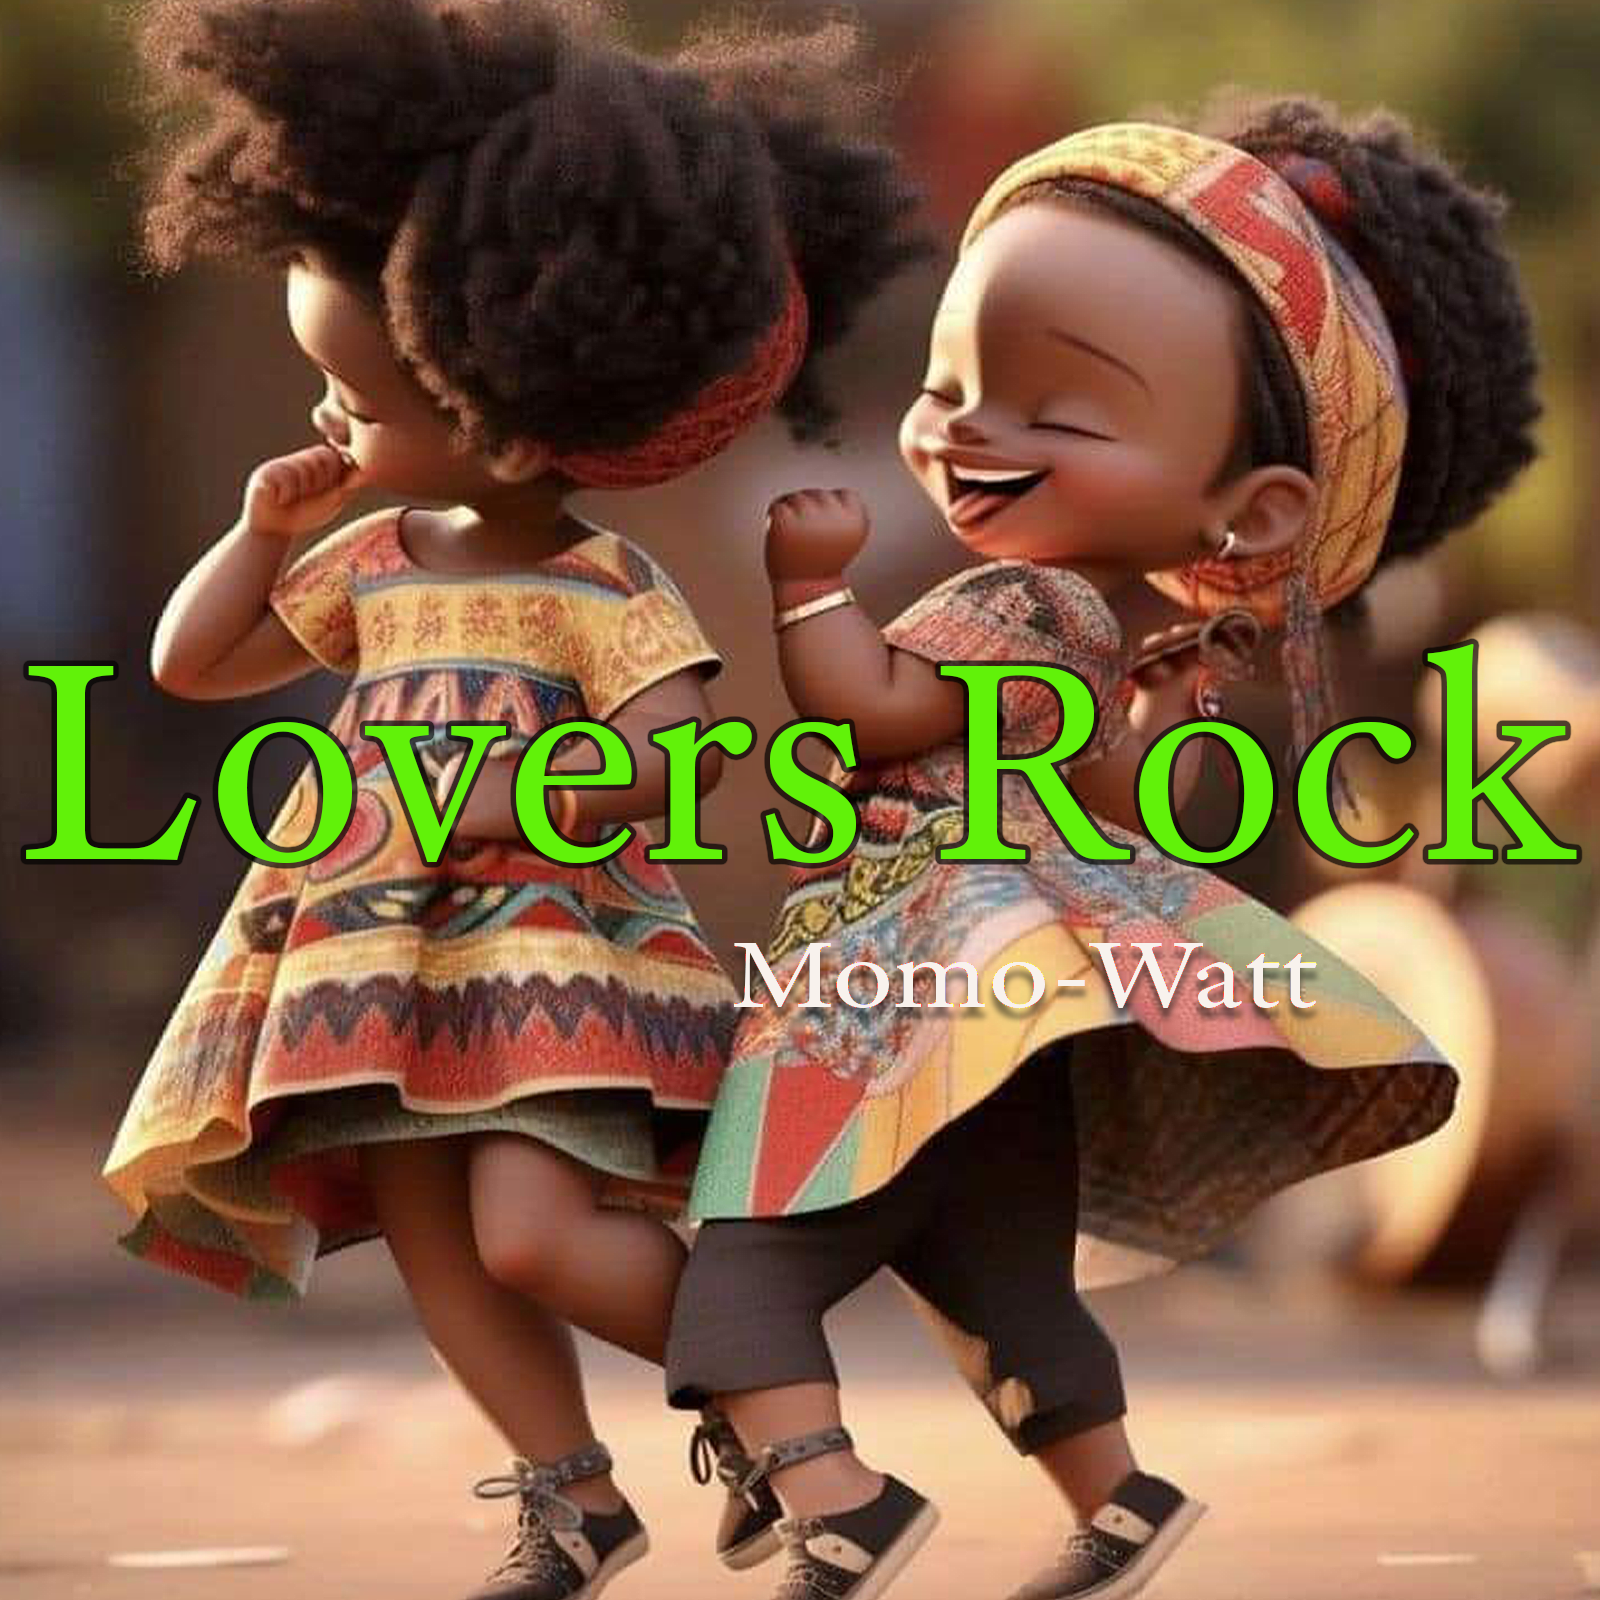 Lovers Rock by Momo-Watt.